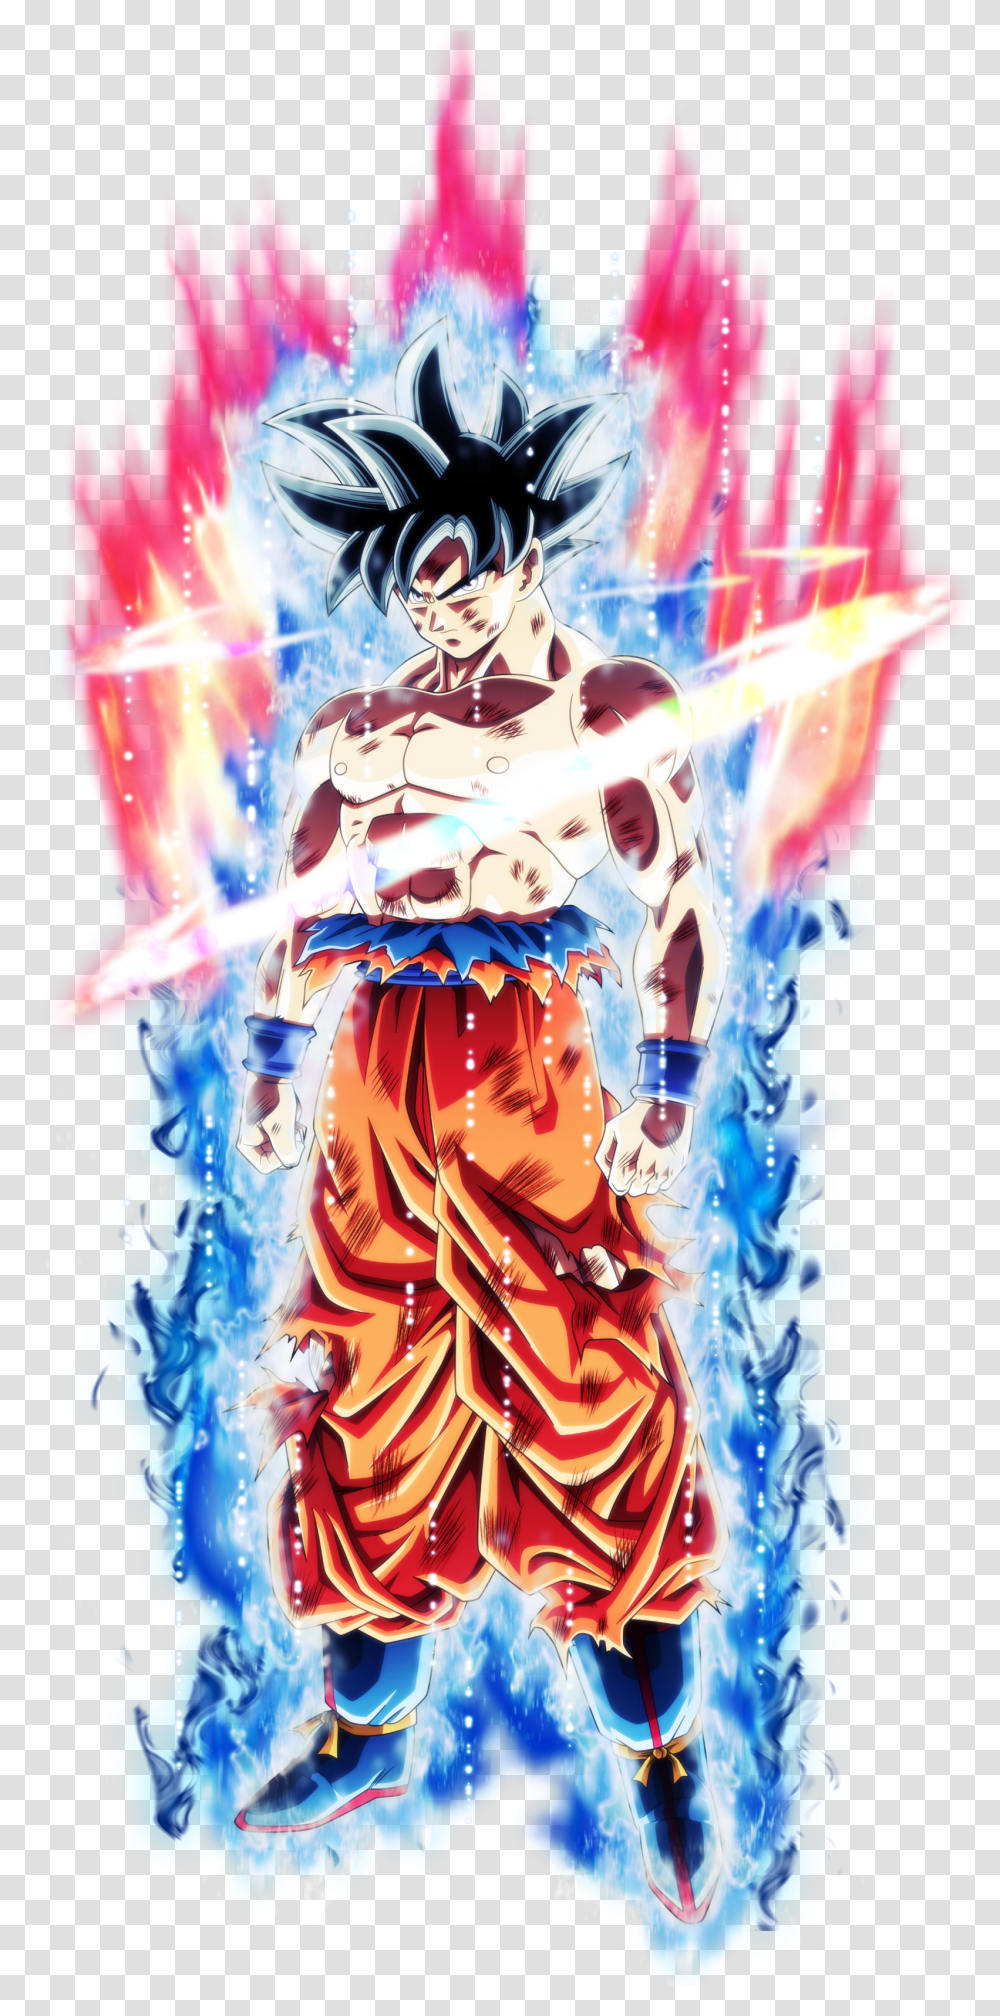 Goku Spirit Bomb Dragon Ball Z Pop Art Transparent Png